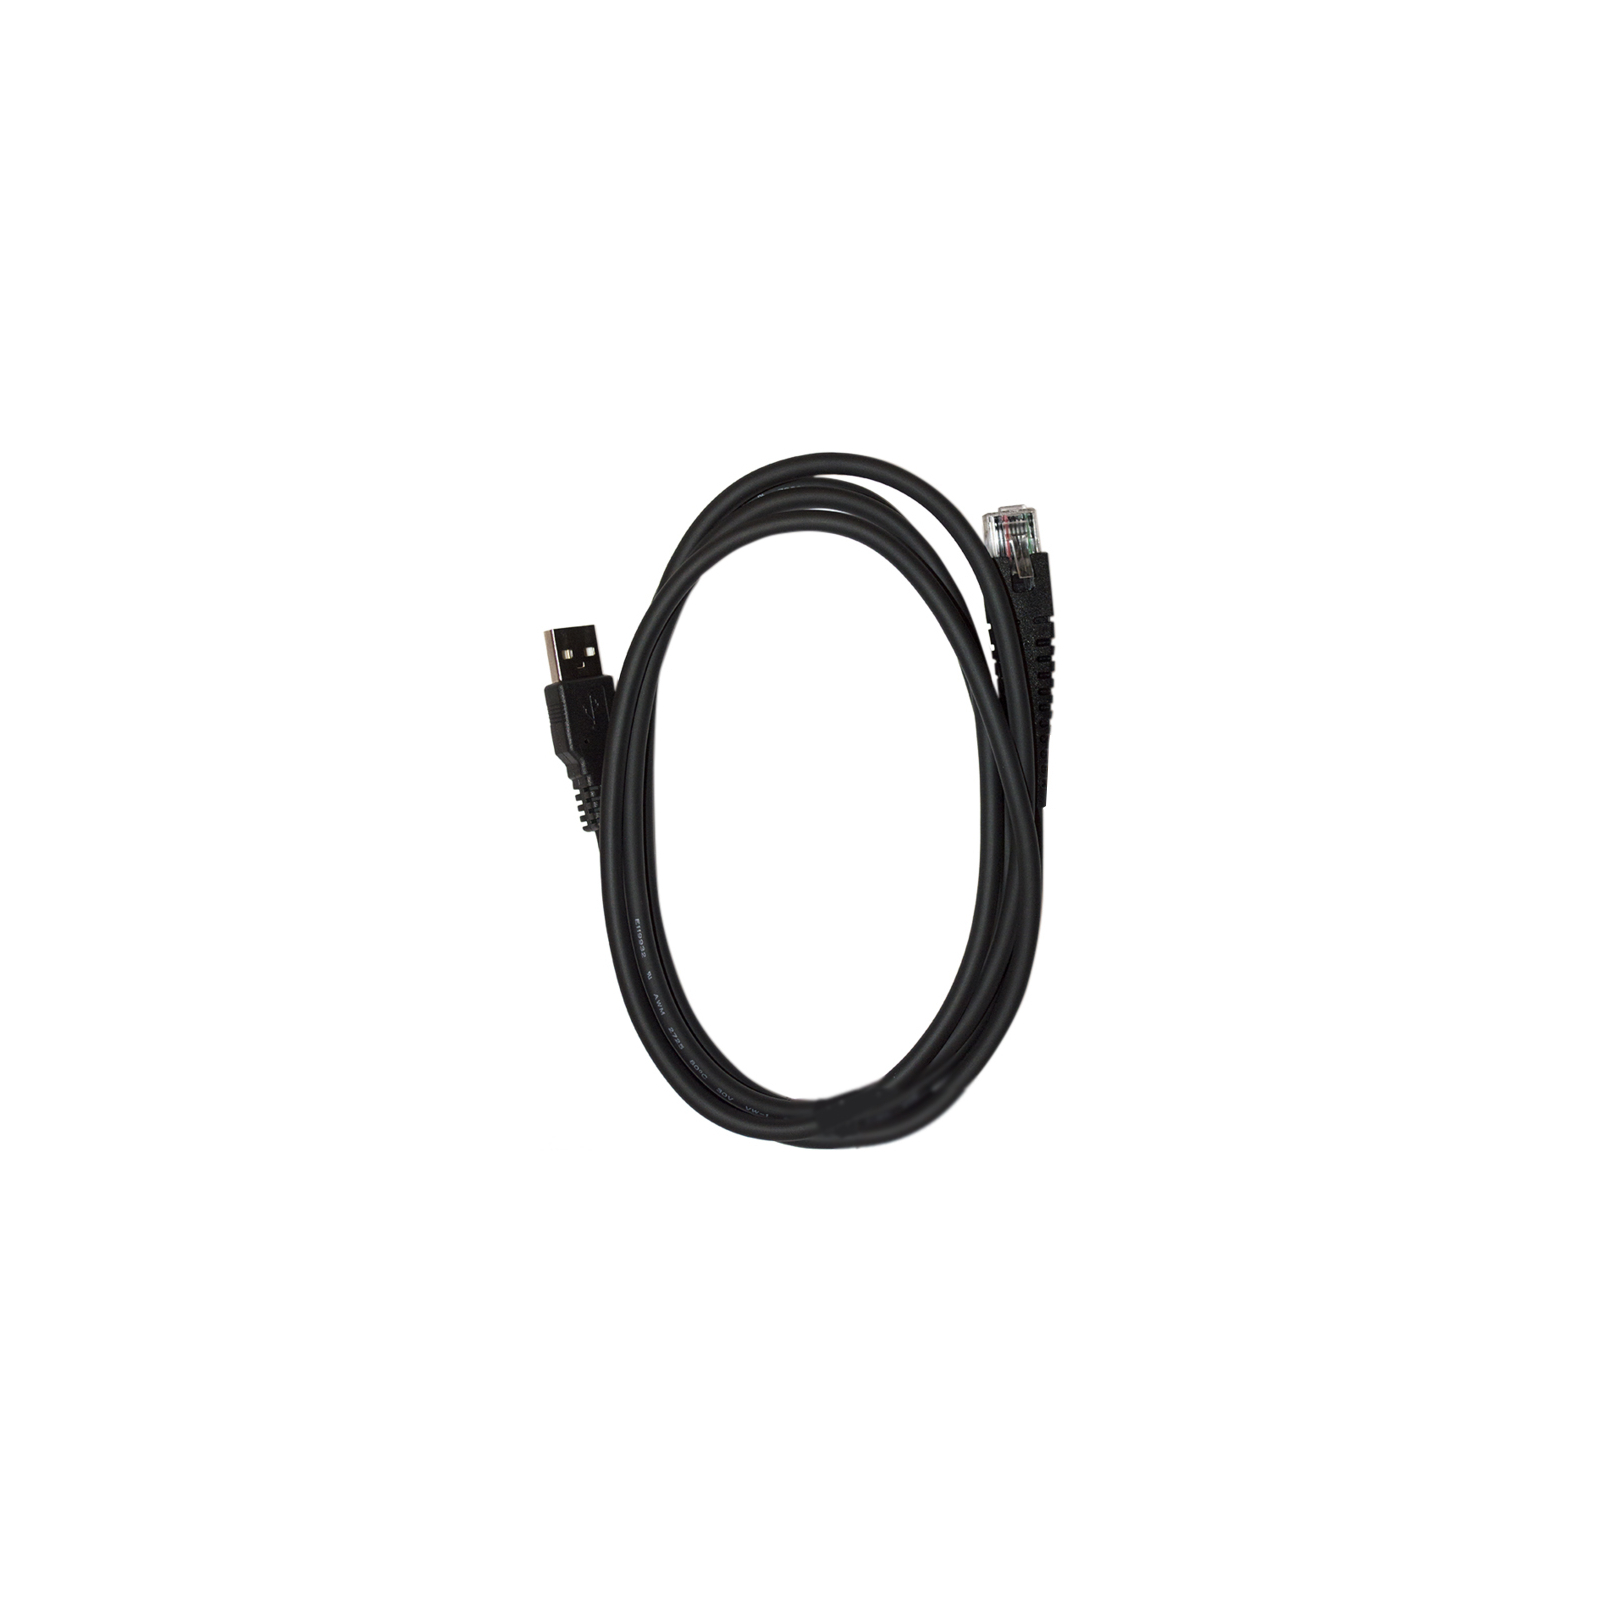 Інтерфейсний кабель Cino кабель USB 1.8m (6517)